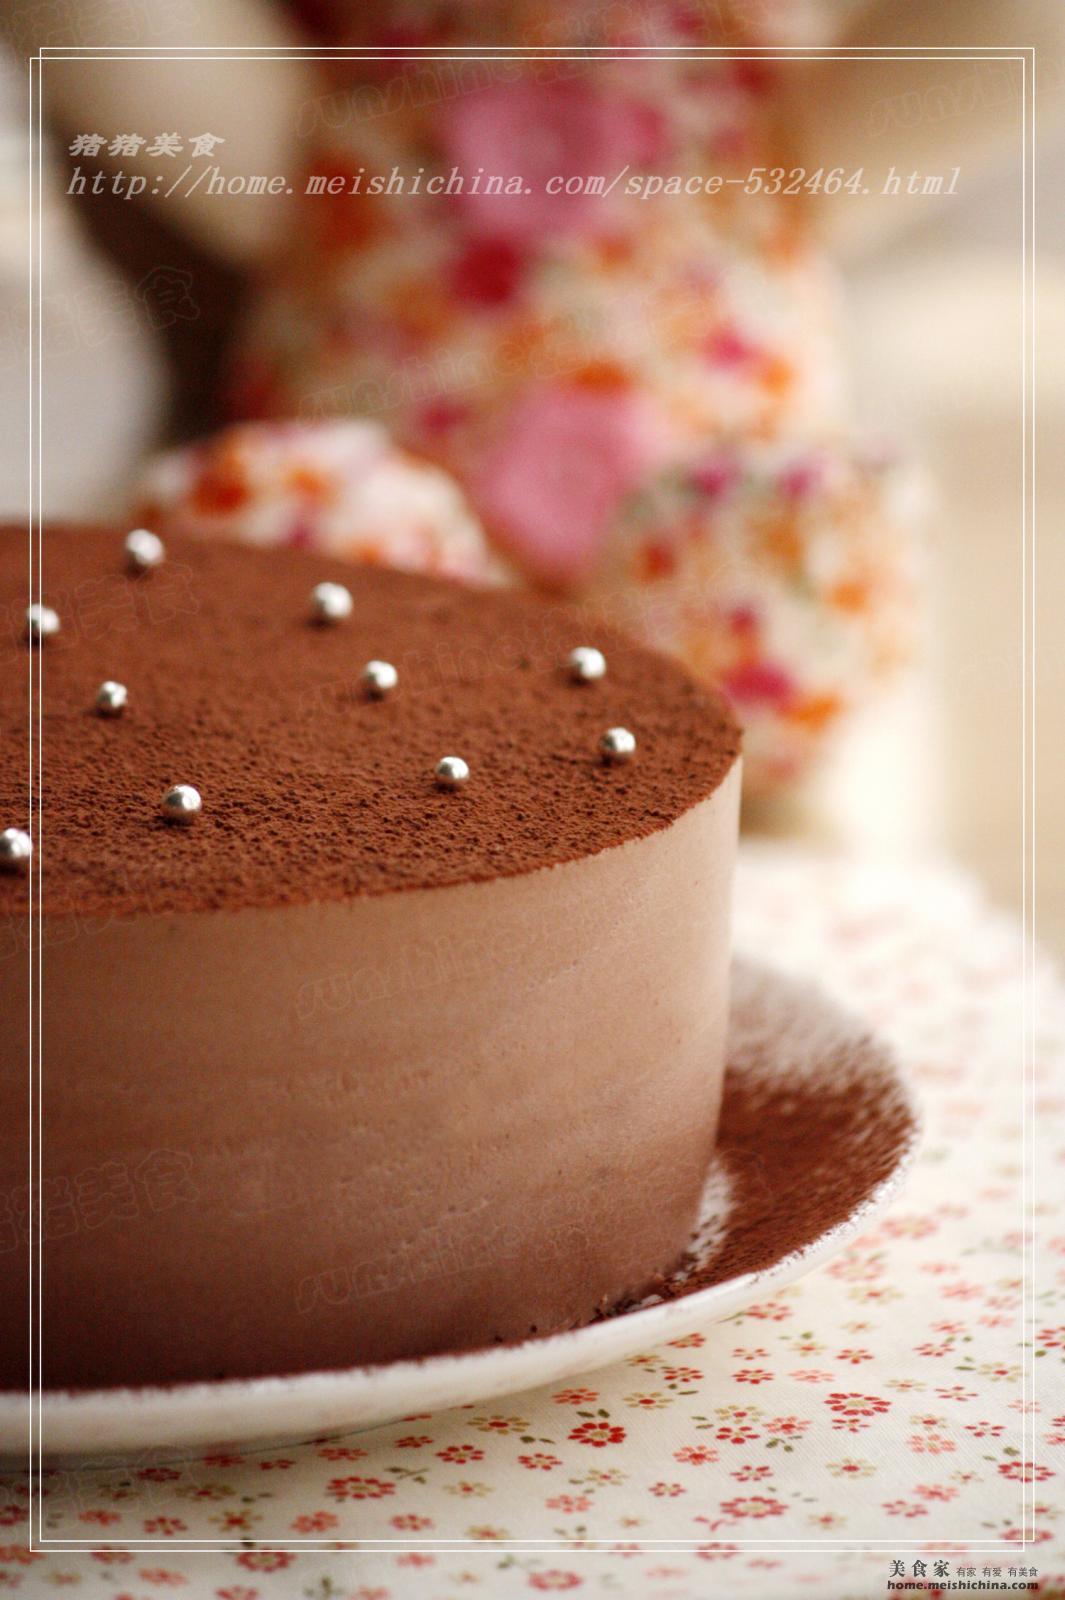 奥莉厨房-巧克力慕斯蛋糕（可可粉）的做法_奥莉厨房-巧克力慕斯蛋糕（可可粉）怎么做_奥莉厨房-巧克力慕斯蛋糕（可可粉）的家常做法_vivi【心食谱】